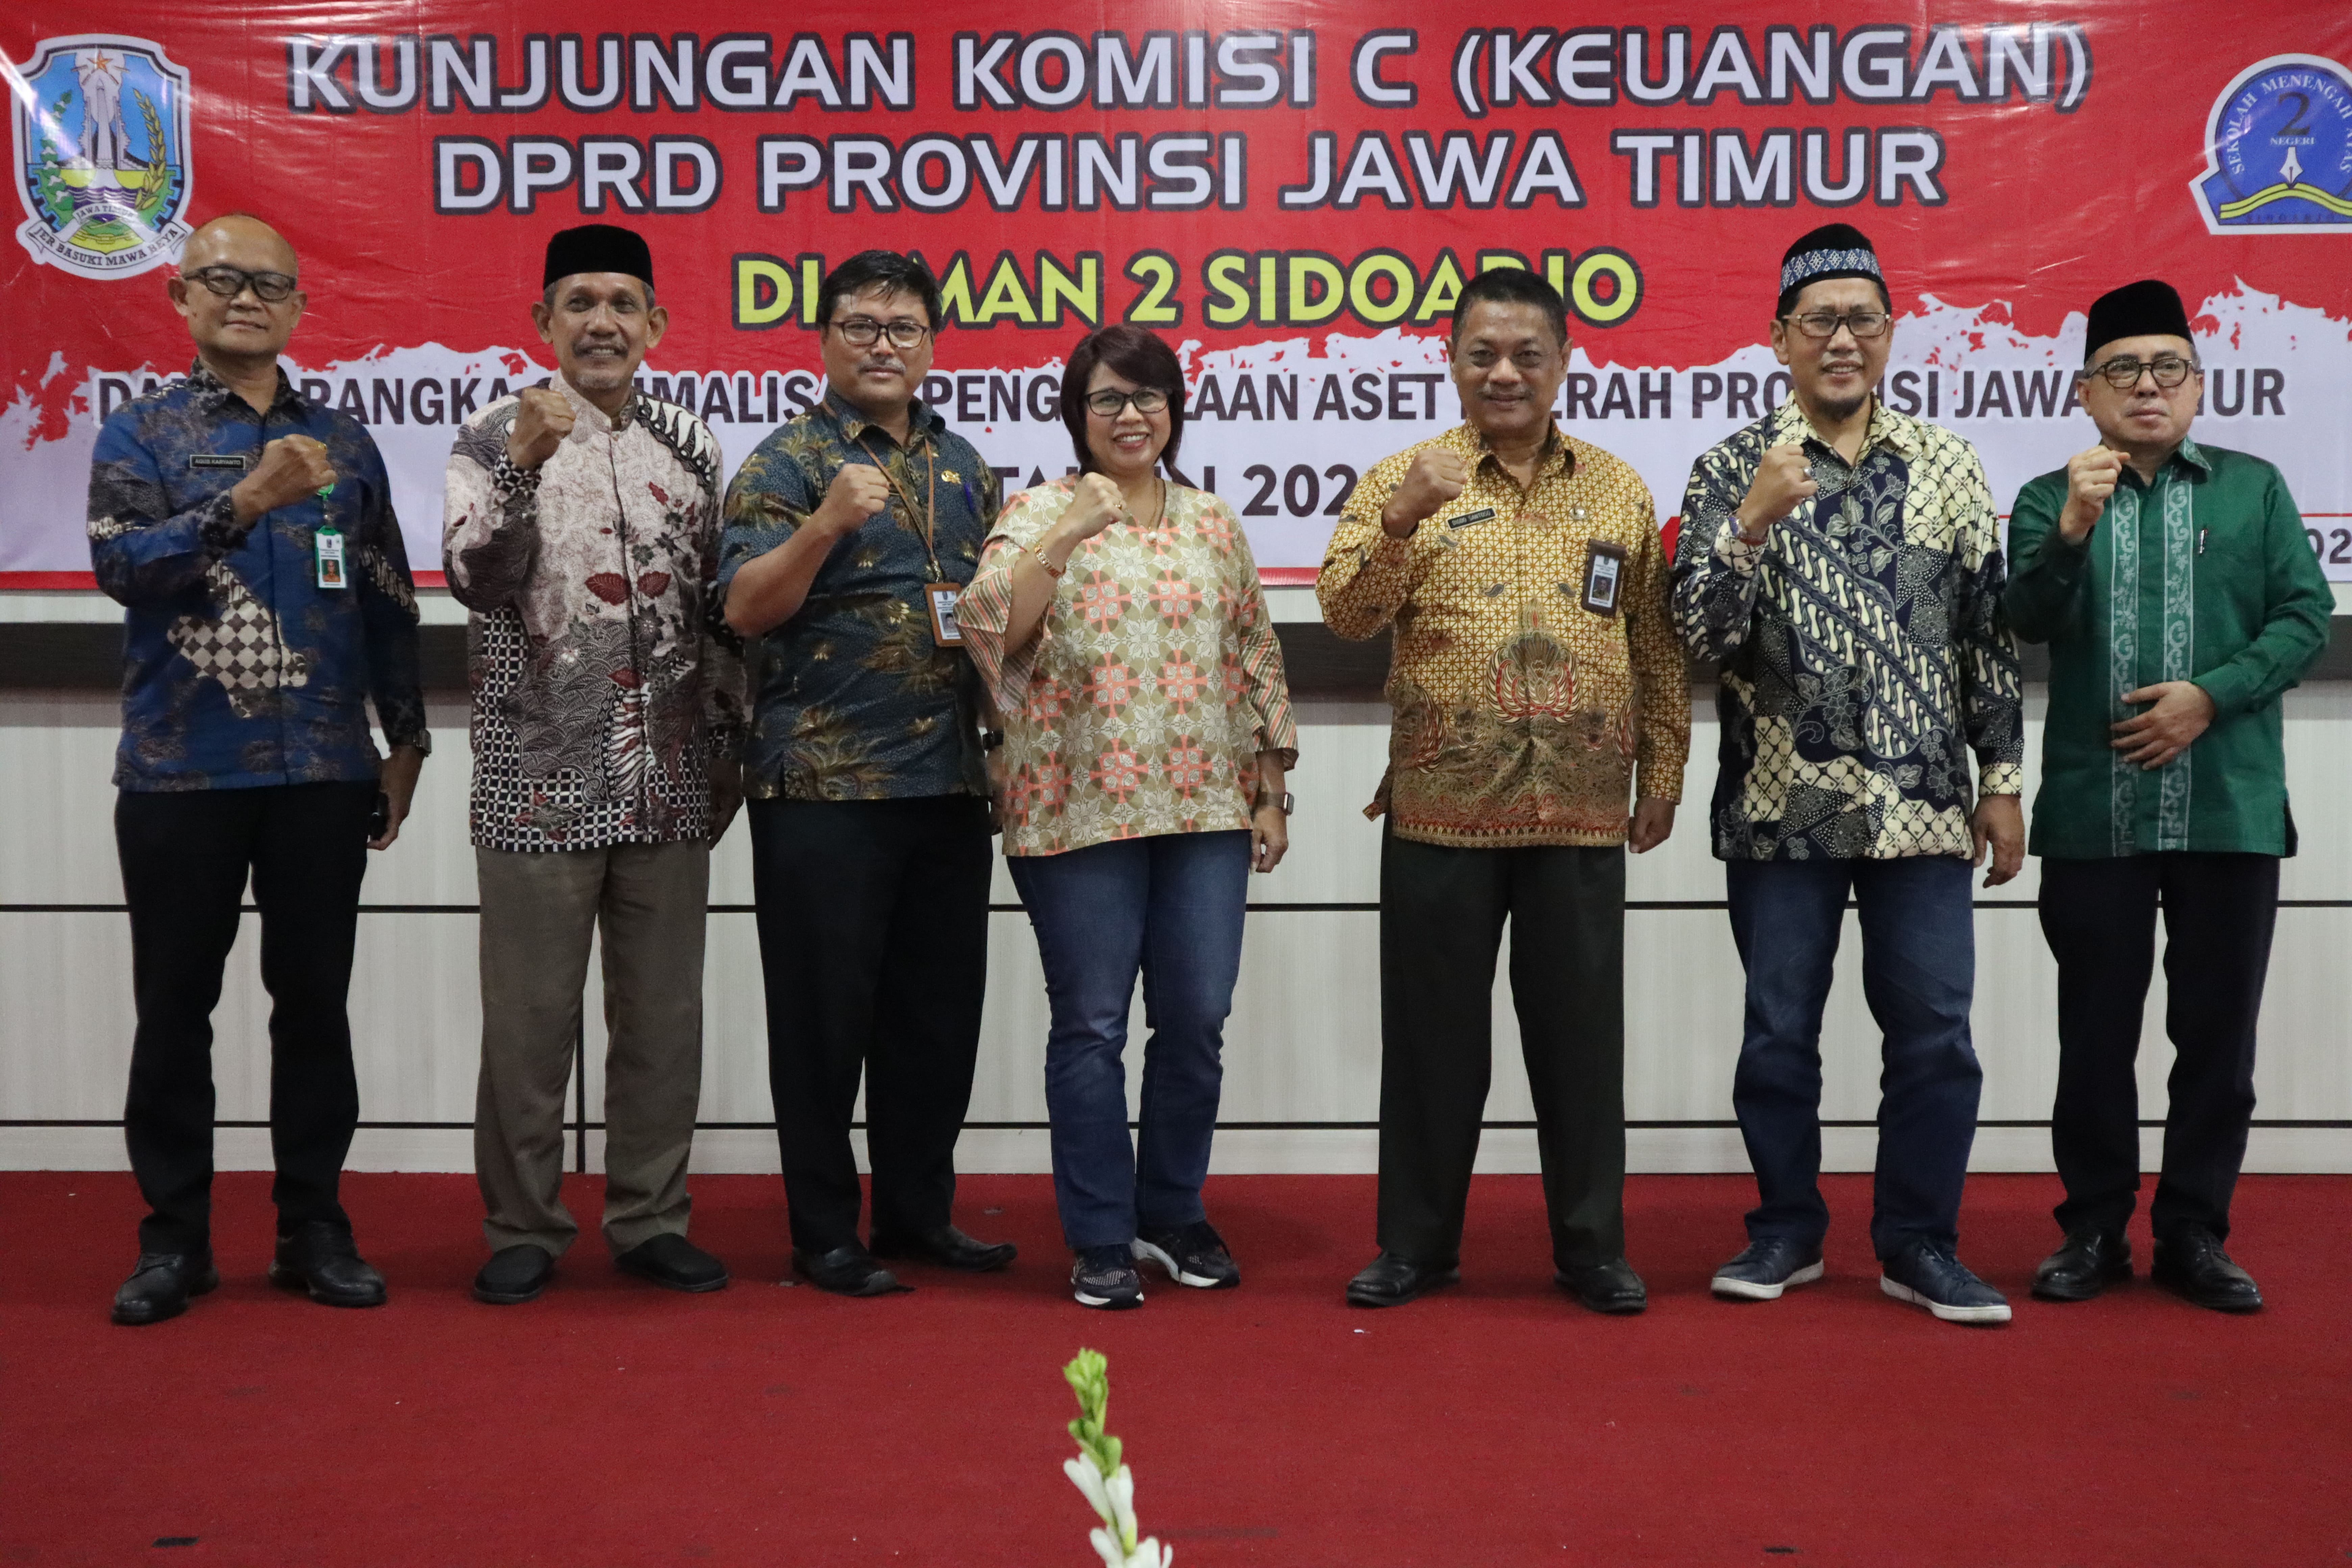 Kunjungan Kerja Komisi C DPRD Jawa Timur dalam rangka monitoring aset Pemprov Jatim di SMAN 2 Sidoarjo